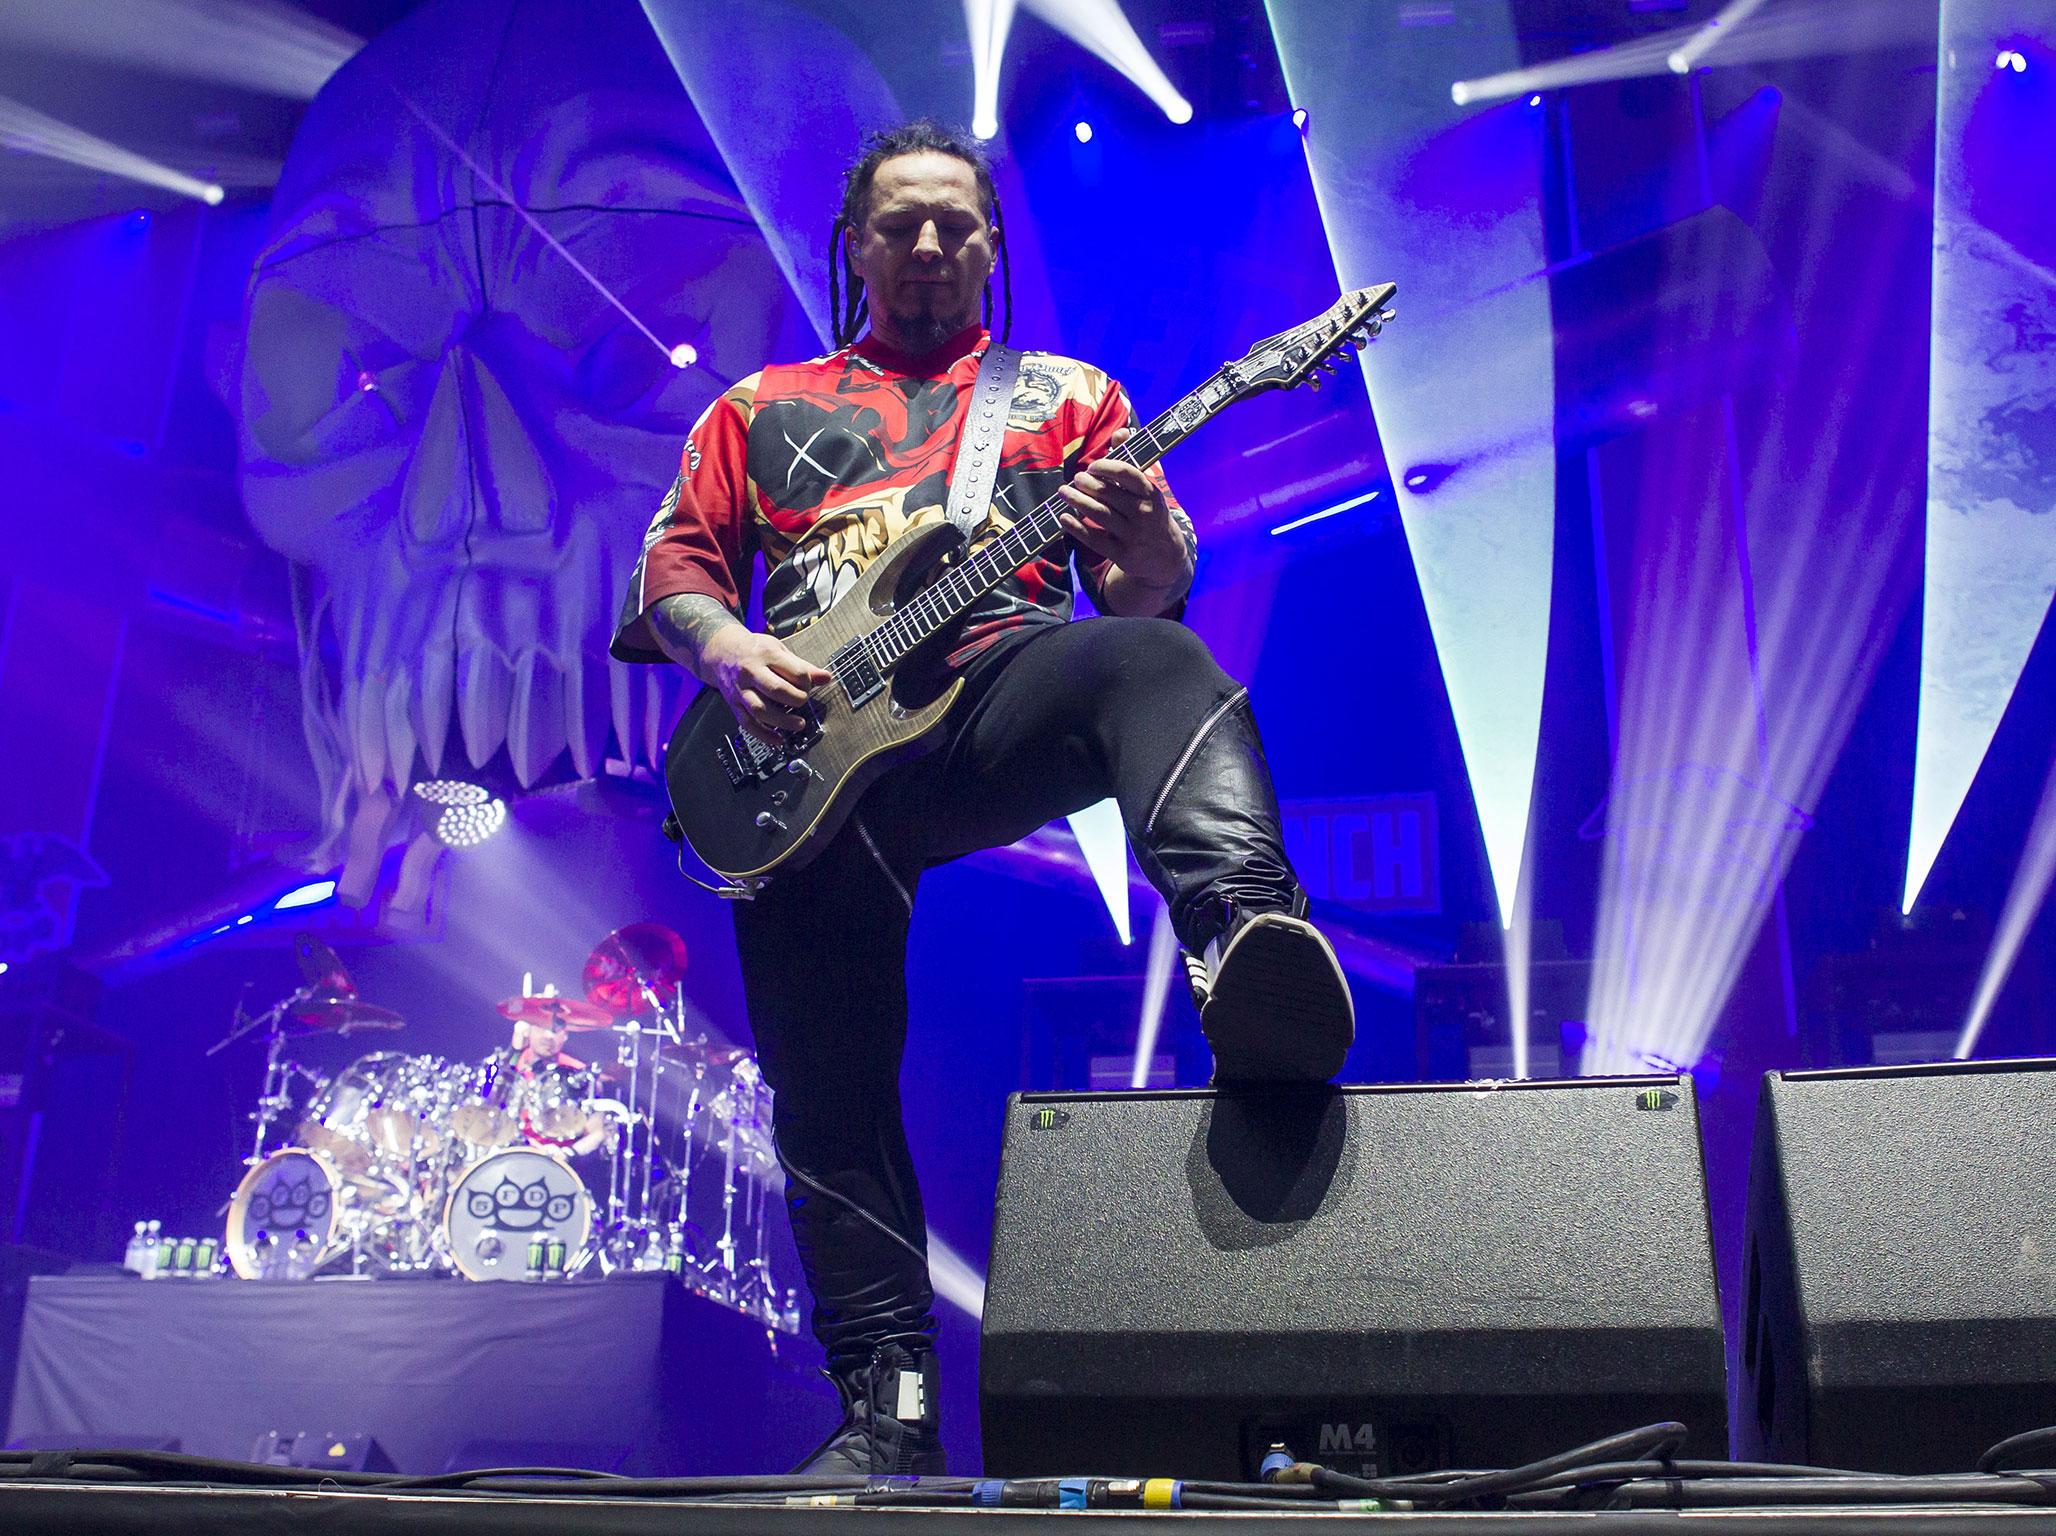 Five Finger Death Punch guitarist Zoltan Bathory